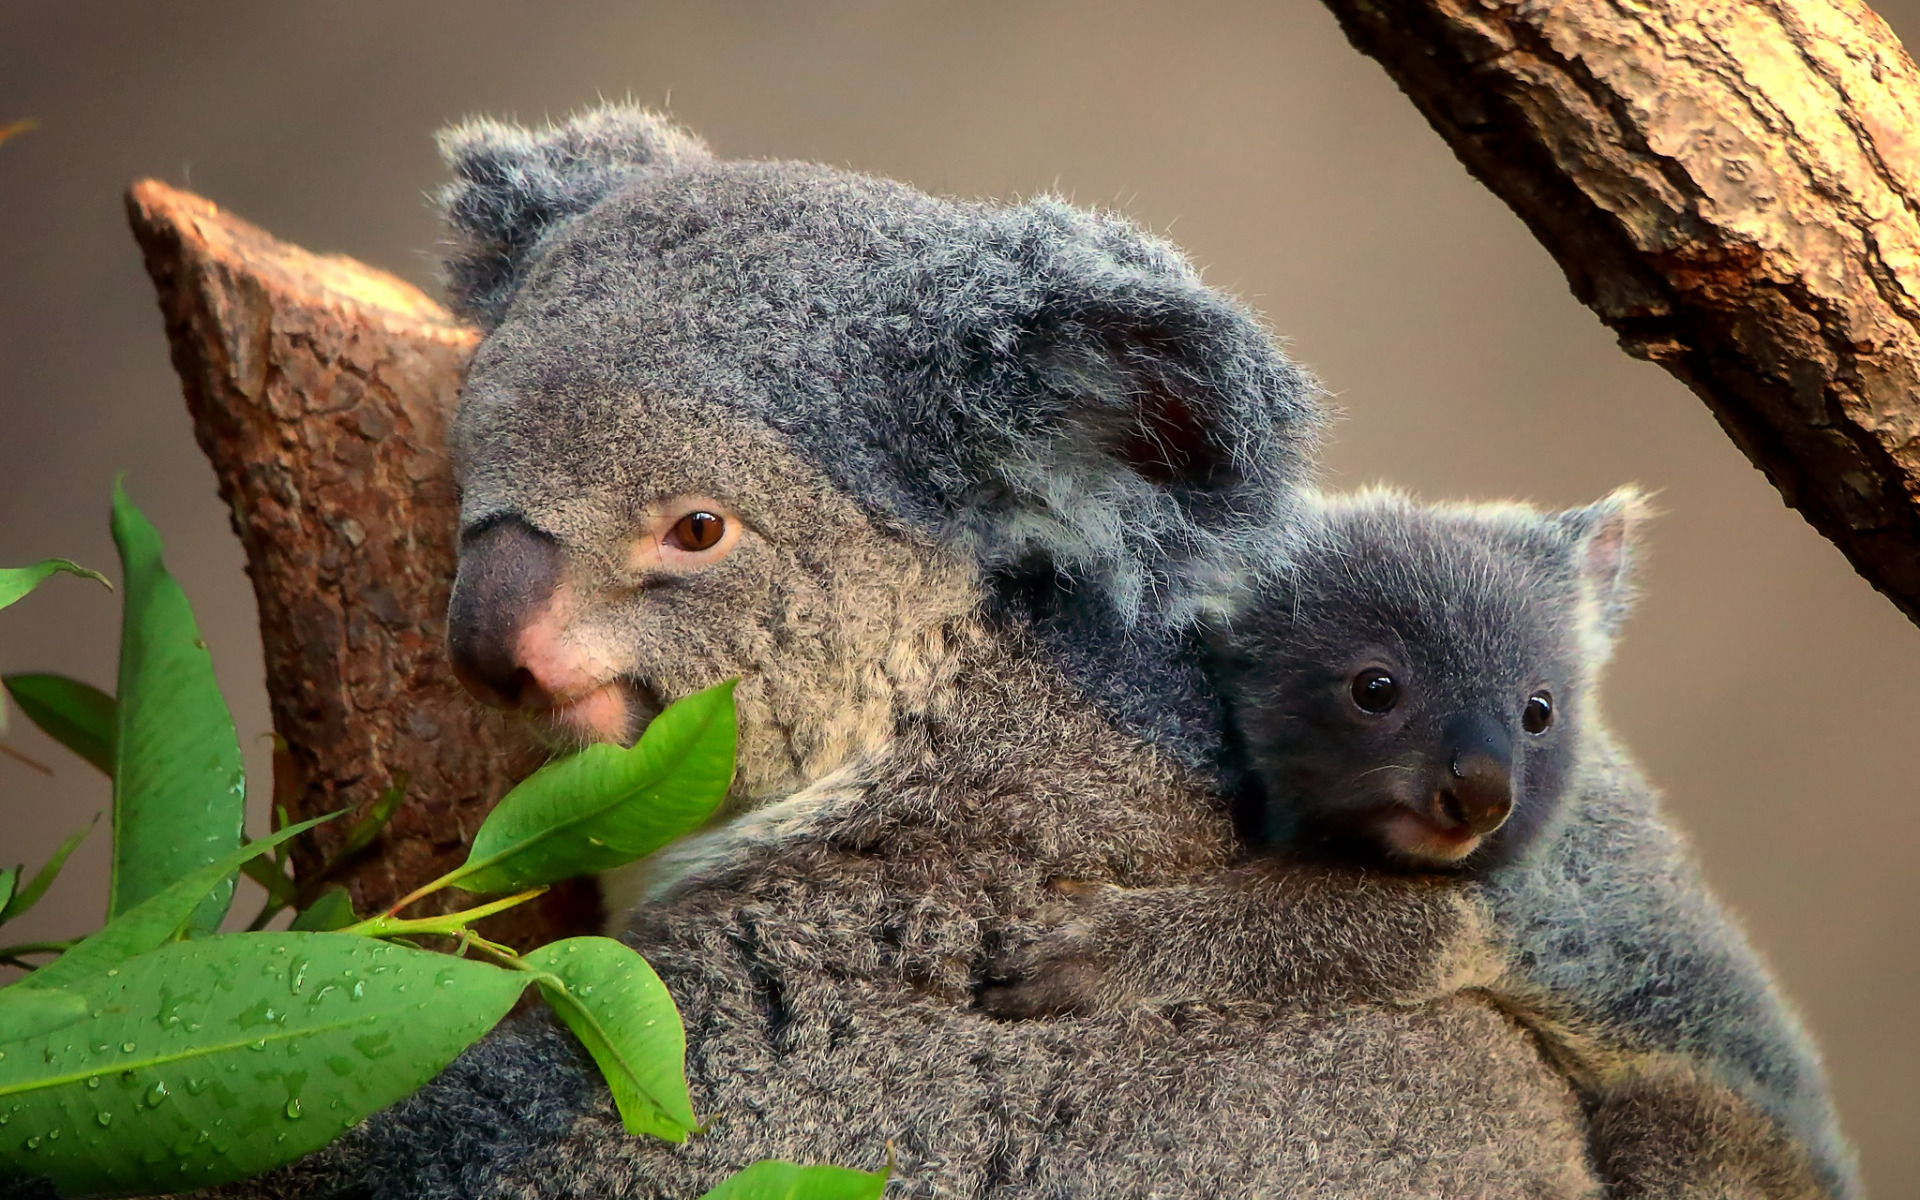 ダウンロード画像 コアラ オーストラリア お母さんと小さなコアラ かわいい動物 野生生物 野生動物 画面の解像度 19x10 壁紙 デスクトップ上